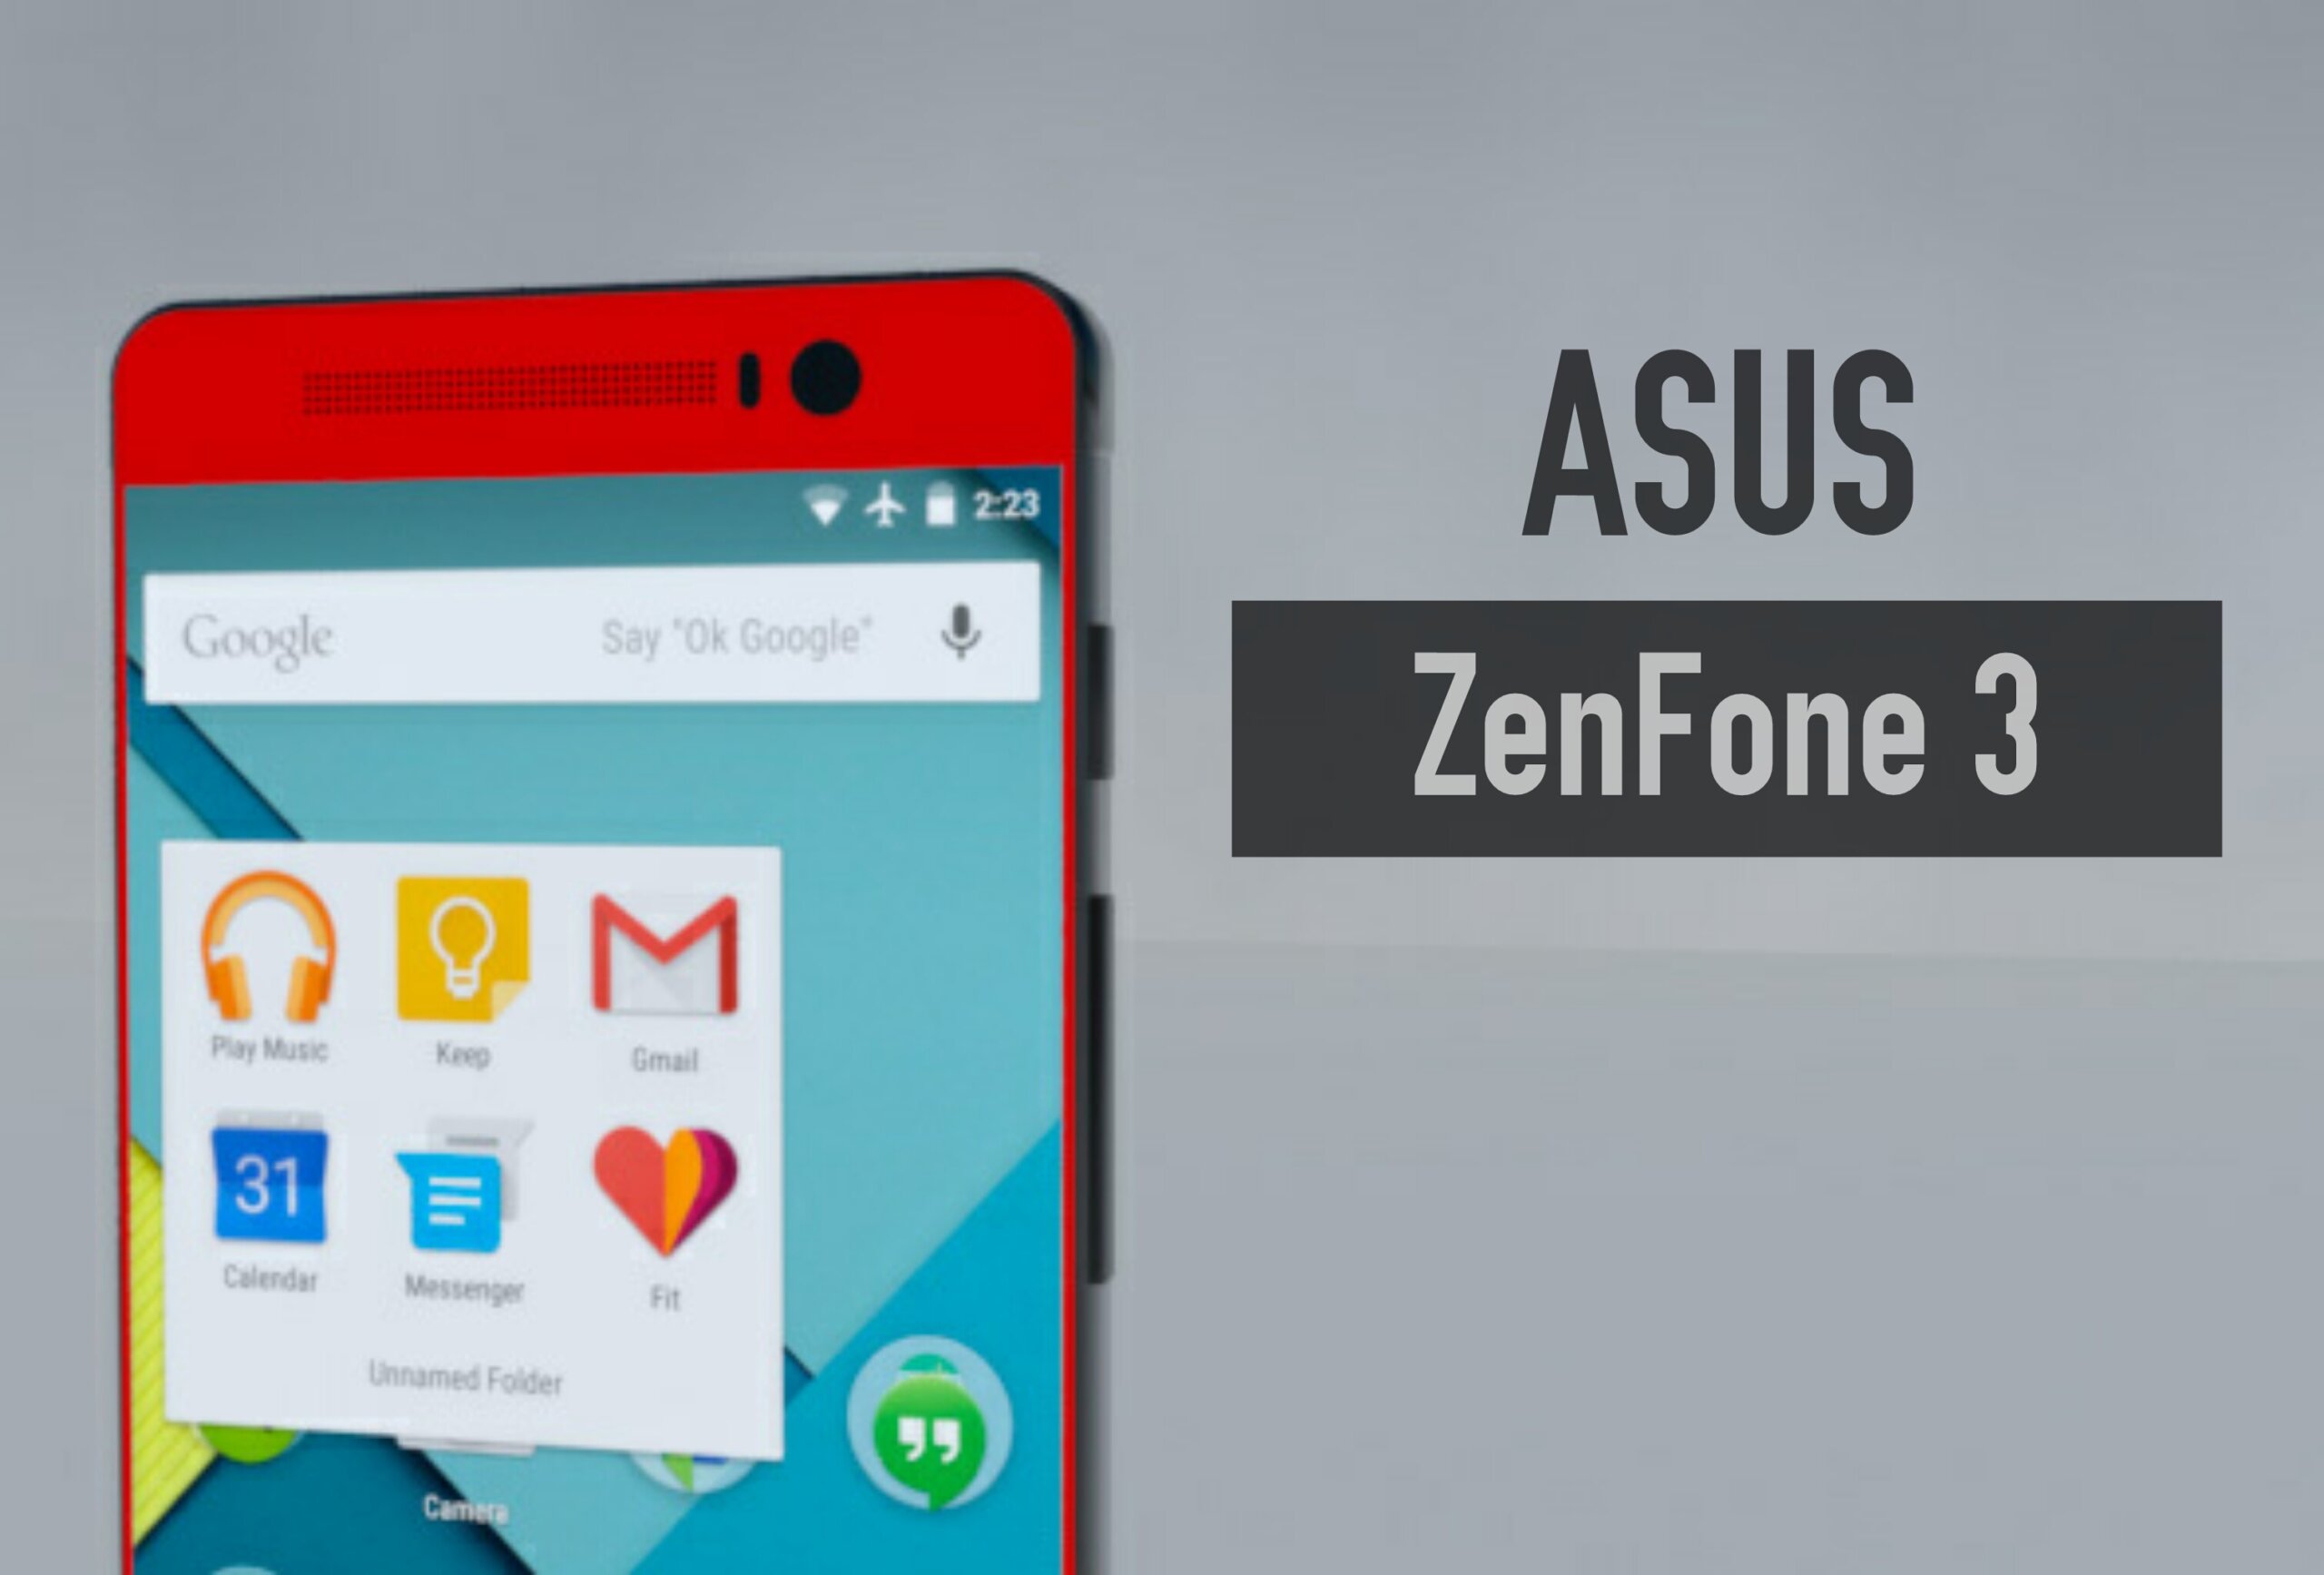 ข้อมูลล่าสุดของ Asus ZenFone 3 !!! มีมาให้เลือกถึงสองรุ่น !!!